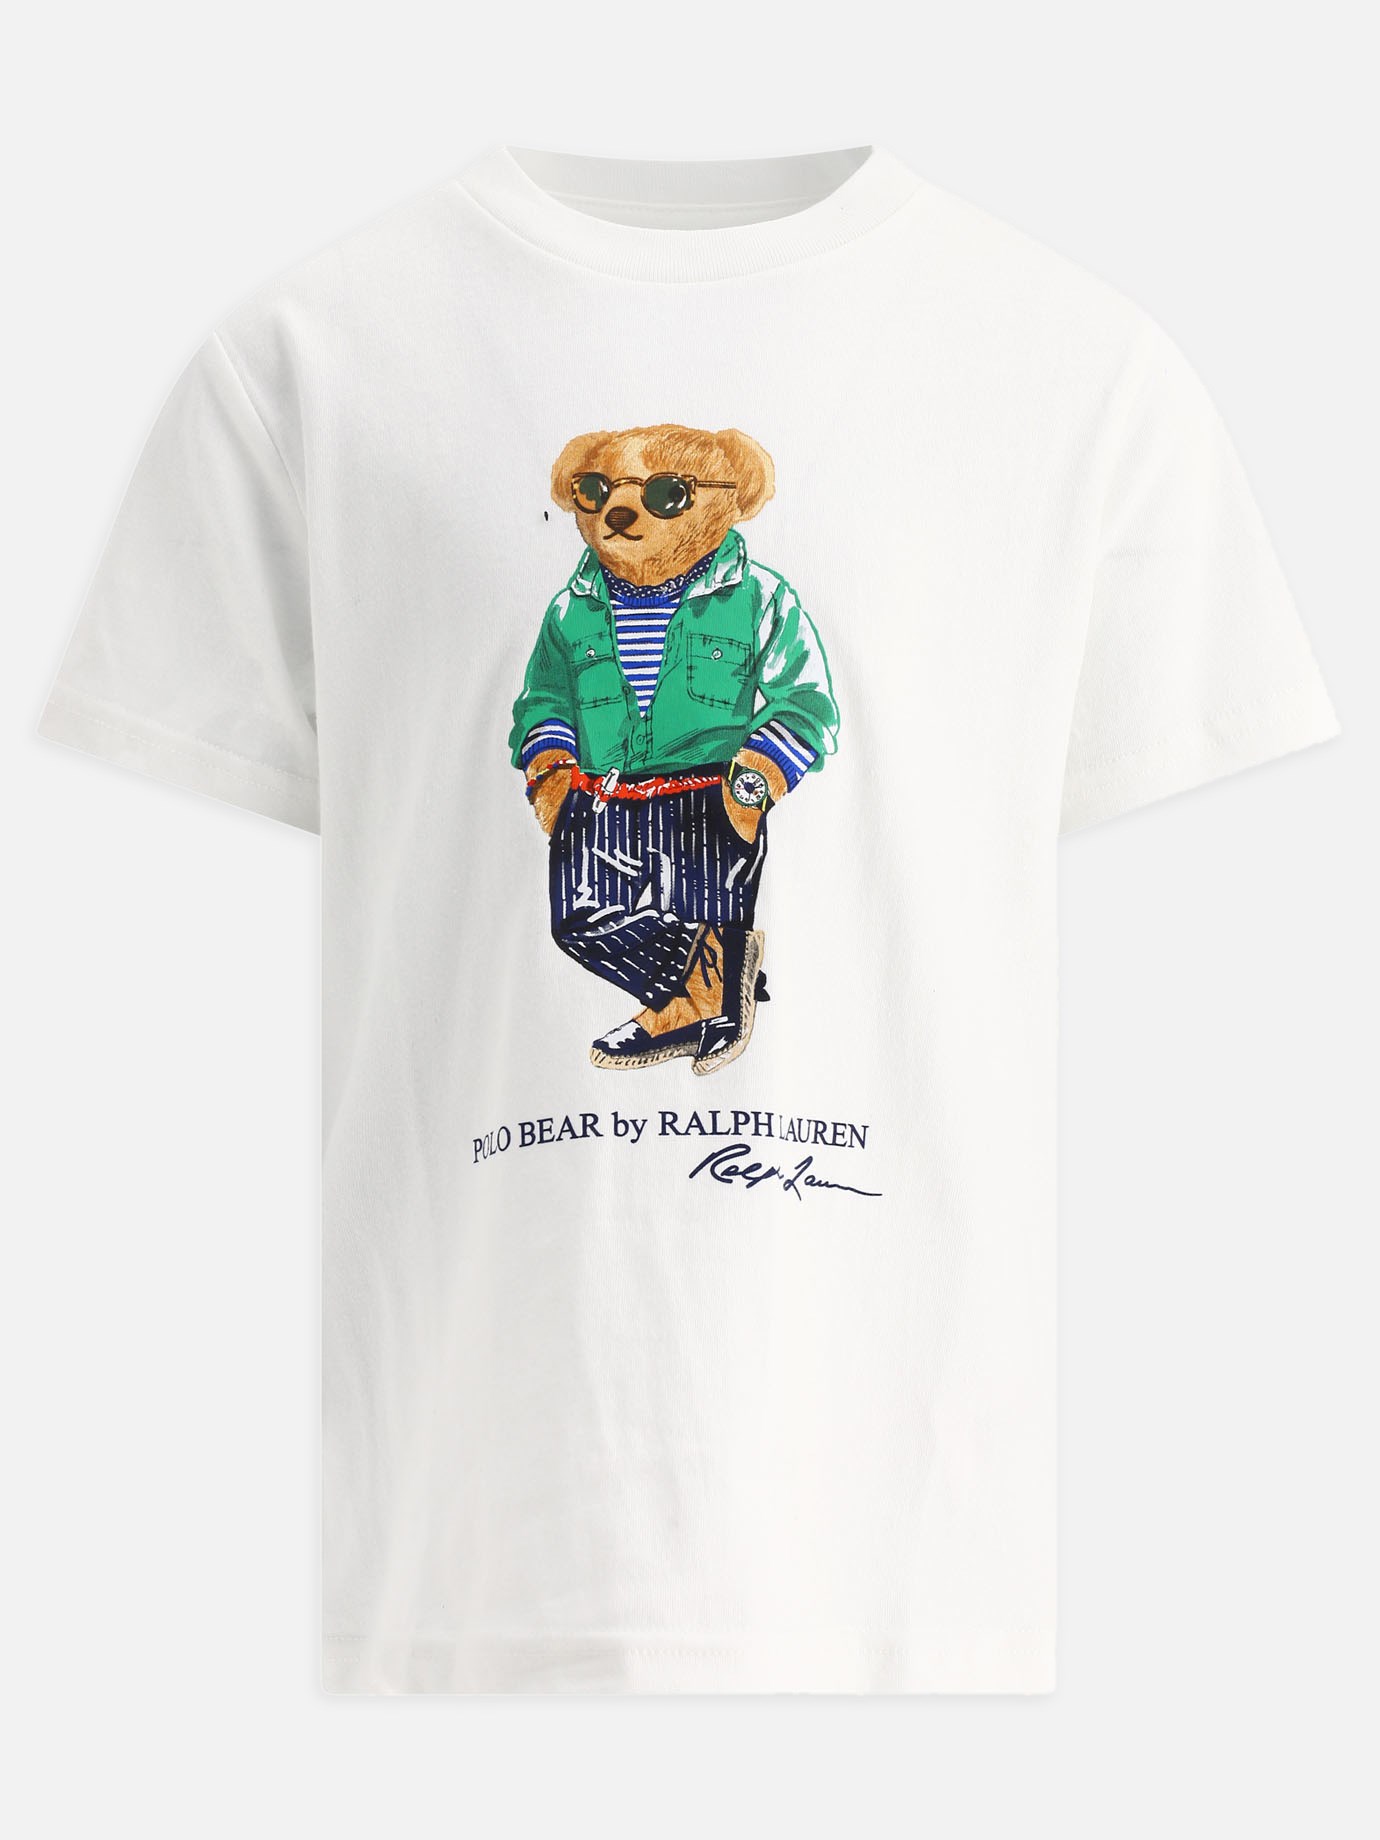  Polo Bear  t-shirtby Ralph Lauren Kids - 1